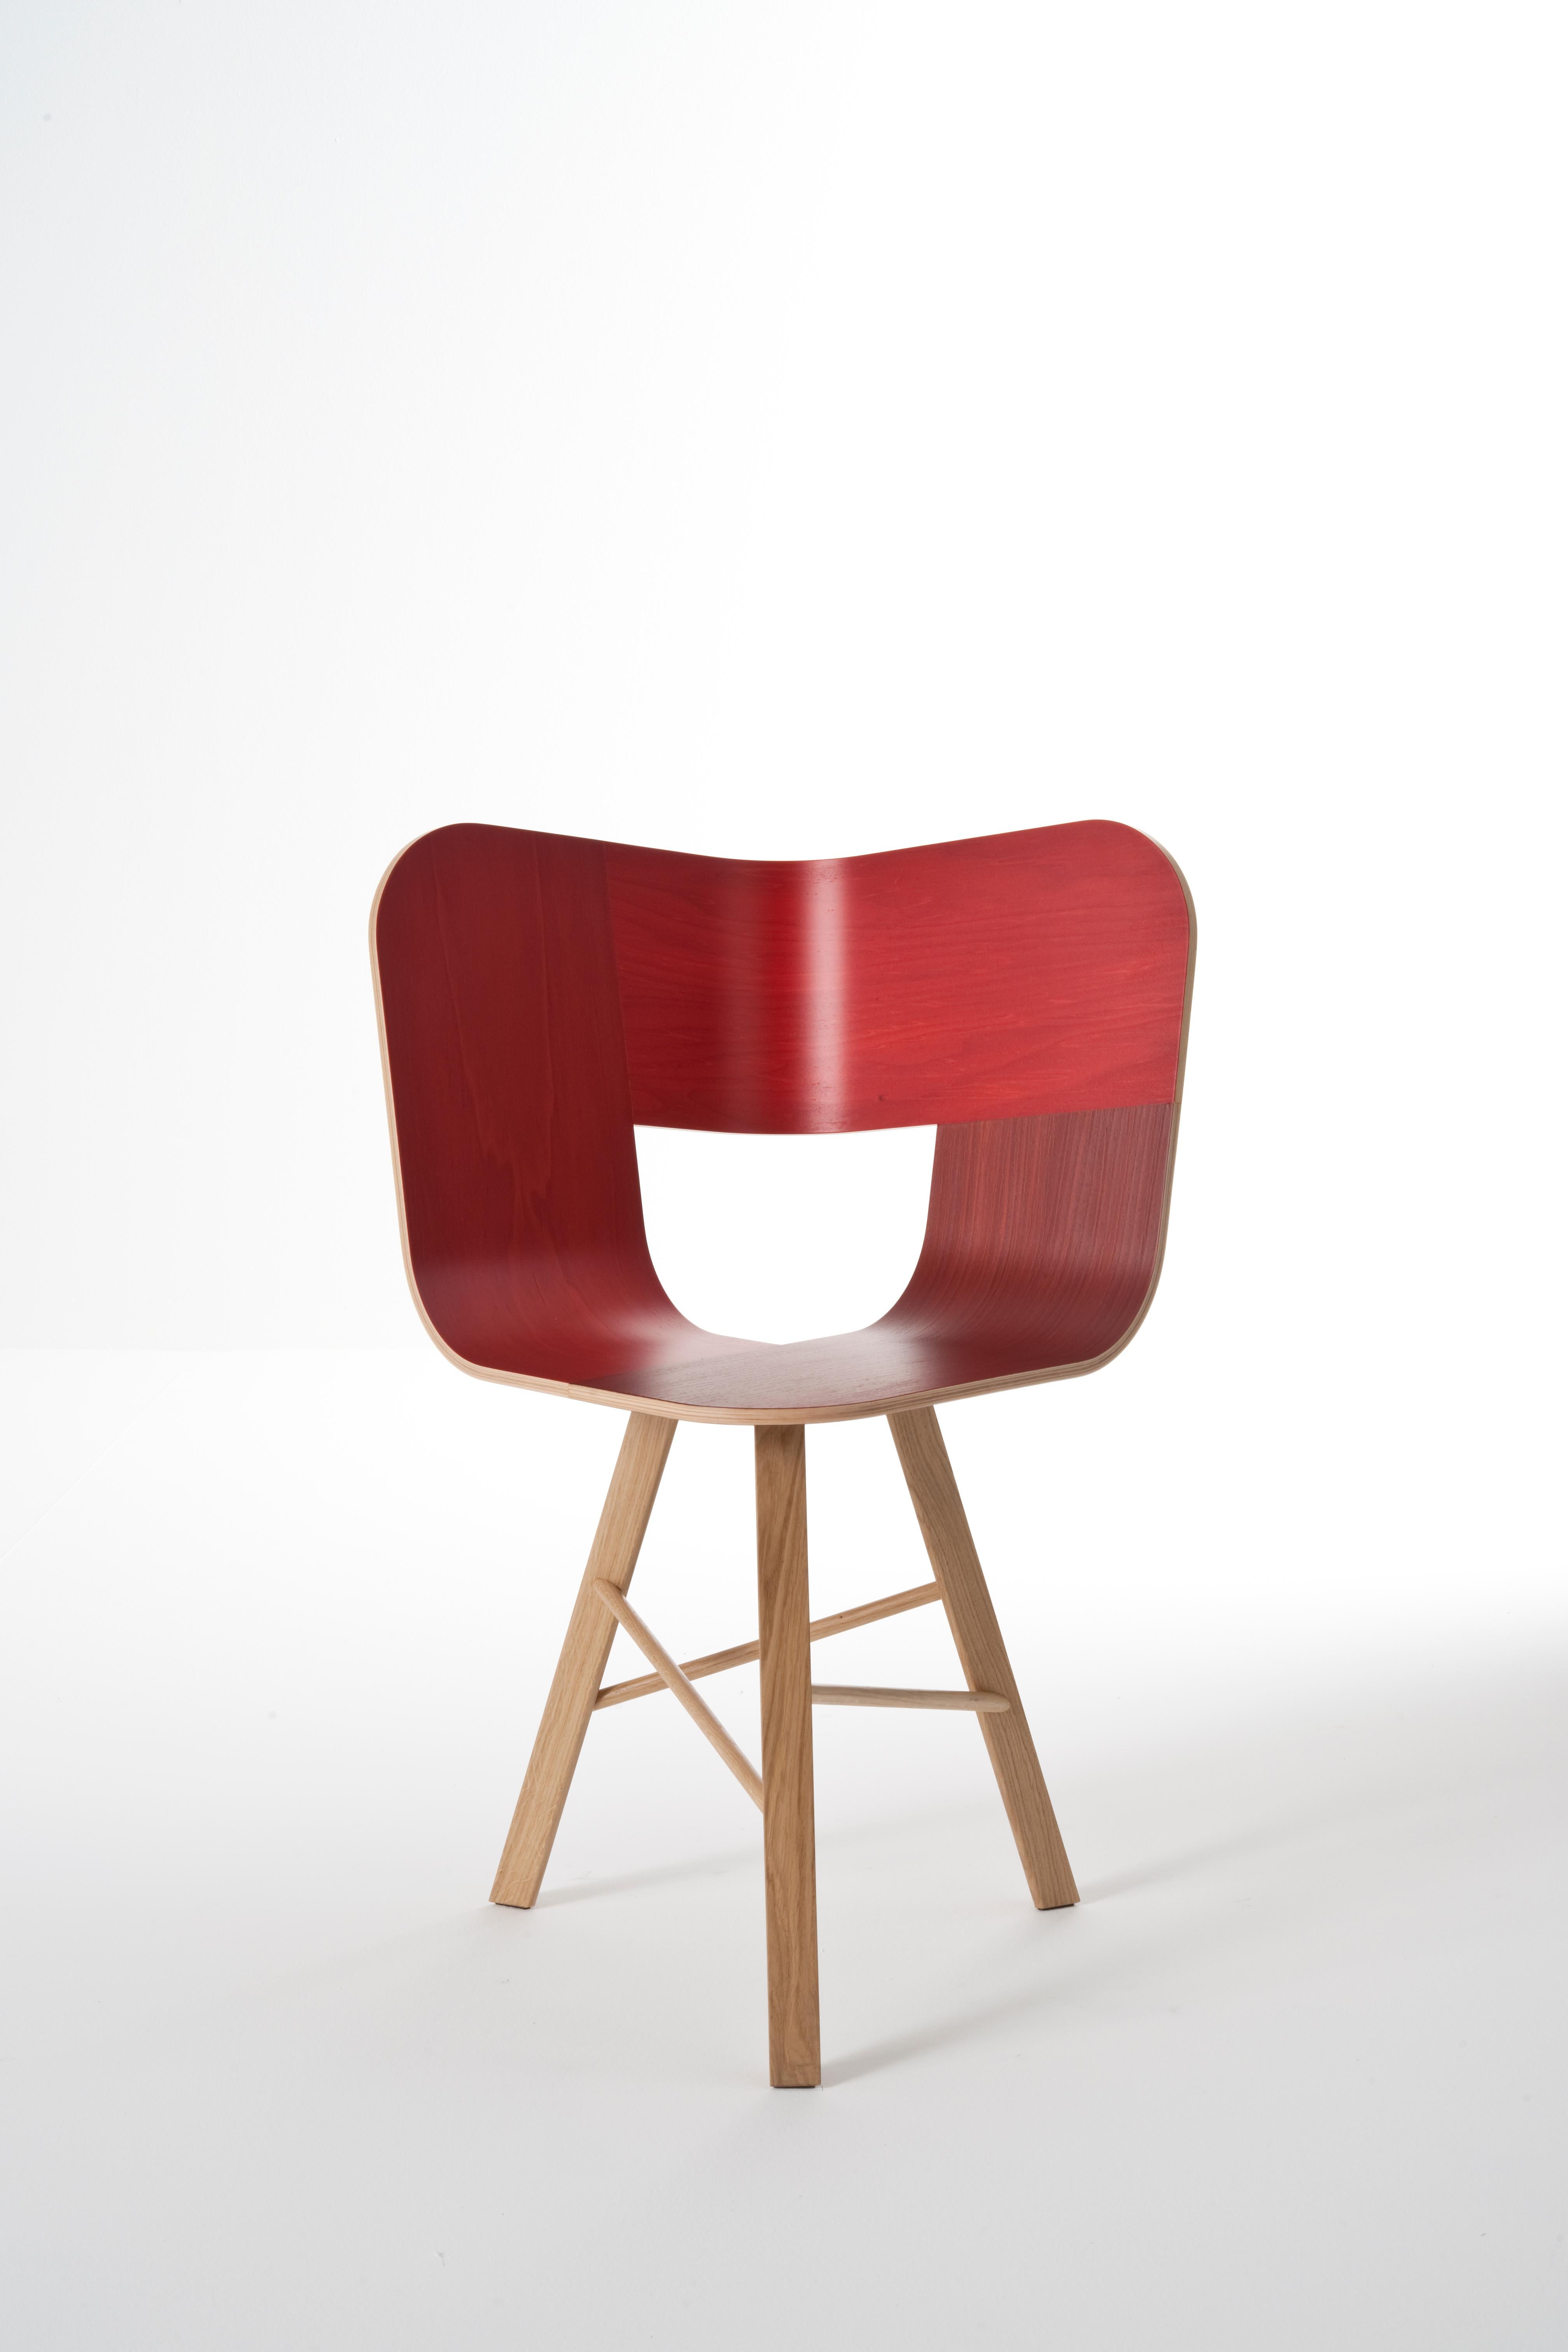 Tria 3-Fuß-Stuhl aus Holz, rot von Colé Italia mit Lorenz+Kaz
(Sitz in RAL-Farbe - Beine in RAL-Farbe lackiert)
Abmessungen: H 82,5, T 52, B 61 cm
MATERIALIEN: Stuhl aus Sperrholz; Untergestell aus massiver Eiche mit 3 Beinen

Auch verfügbar: